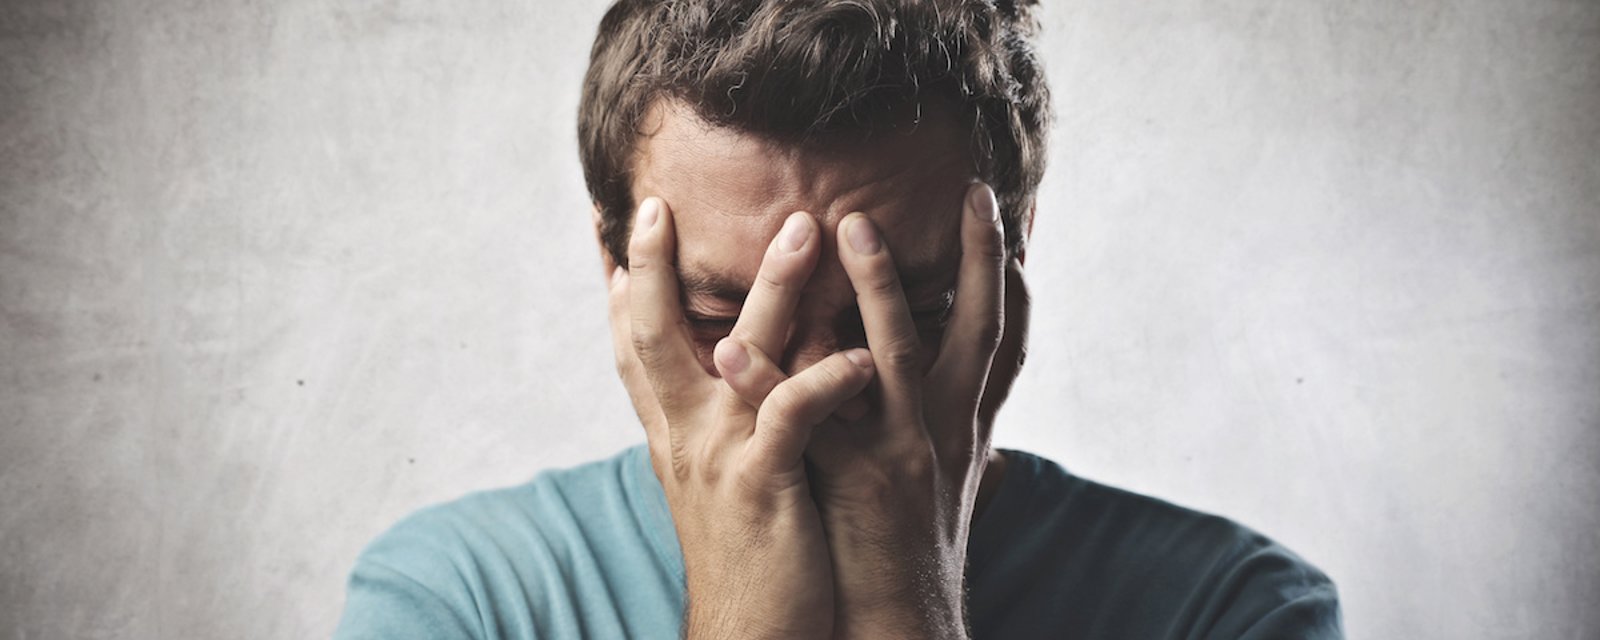 Les 9 types de douleurs causées par la détresse émotionnelle